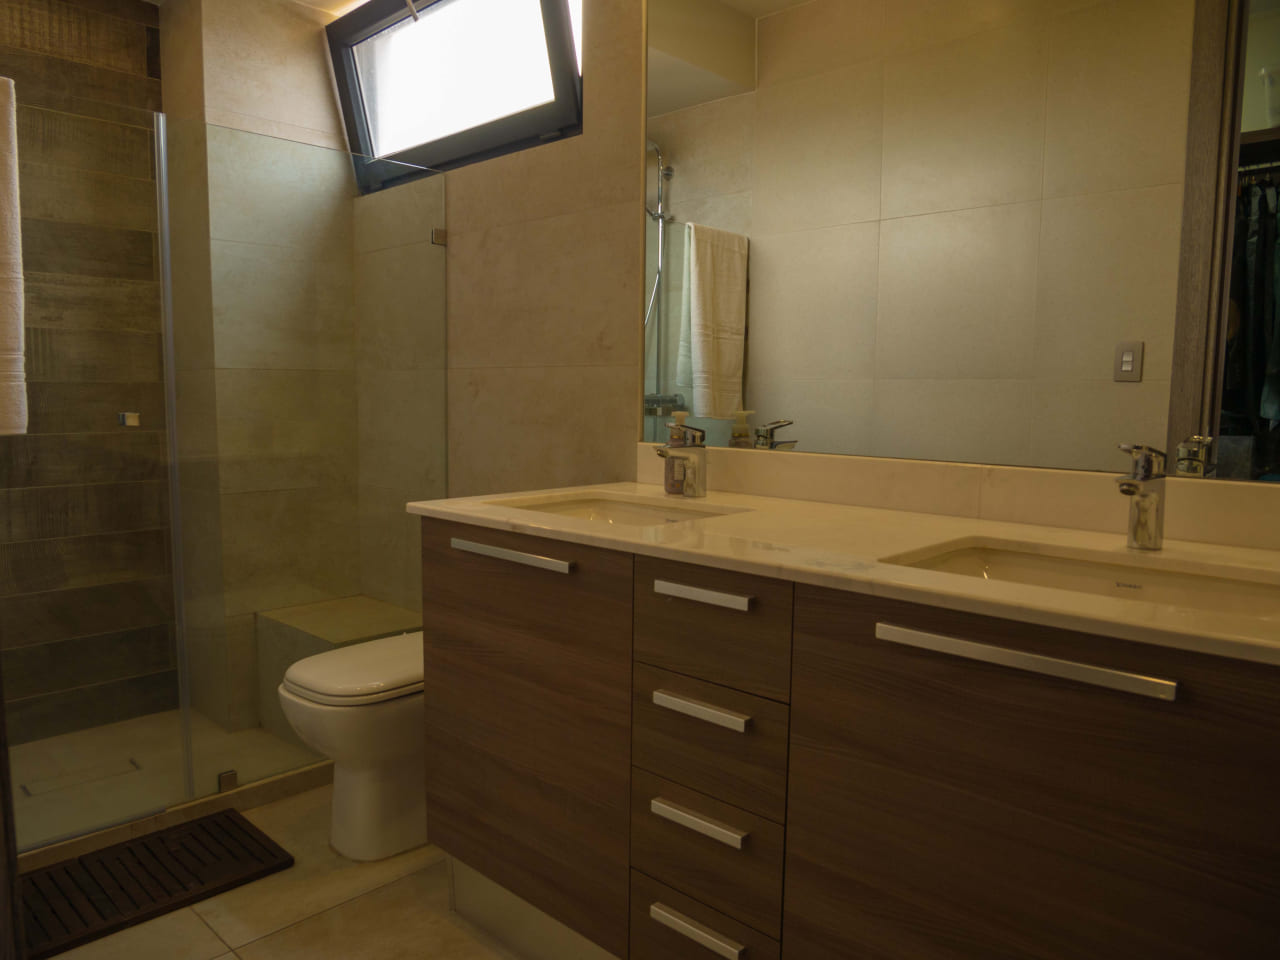 Baño con un mueble de madera, plancha de granito, con un espejo grande junto a ducha con puerta de vidrio.